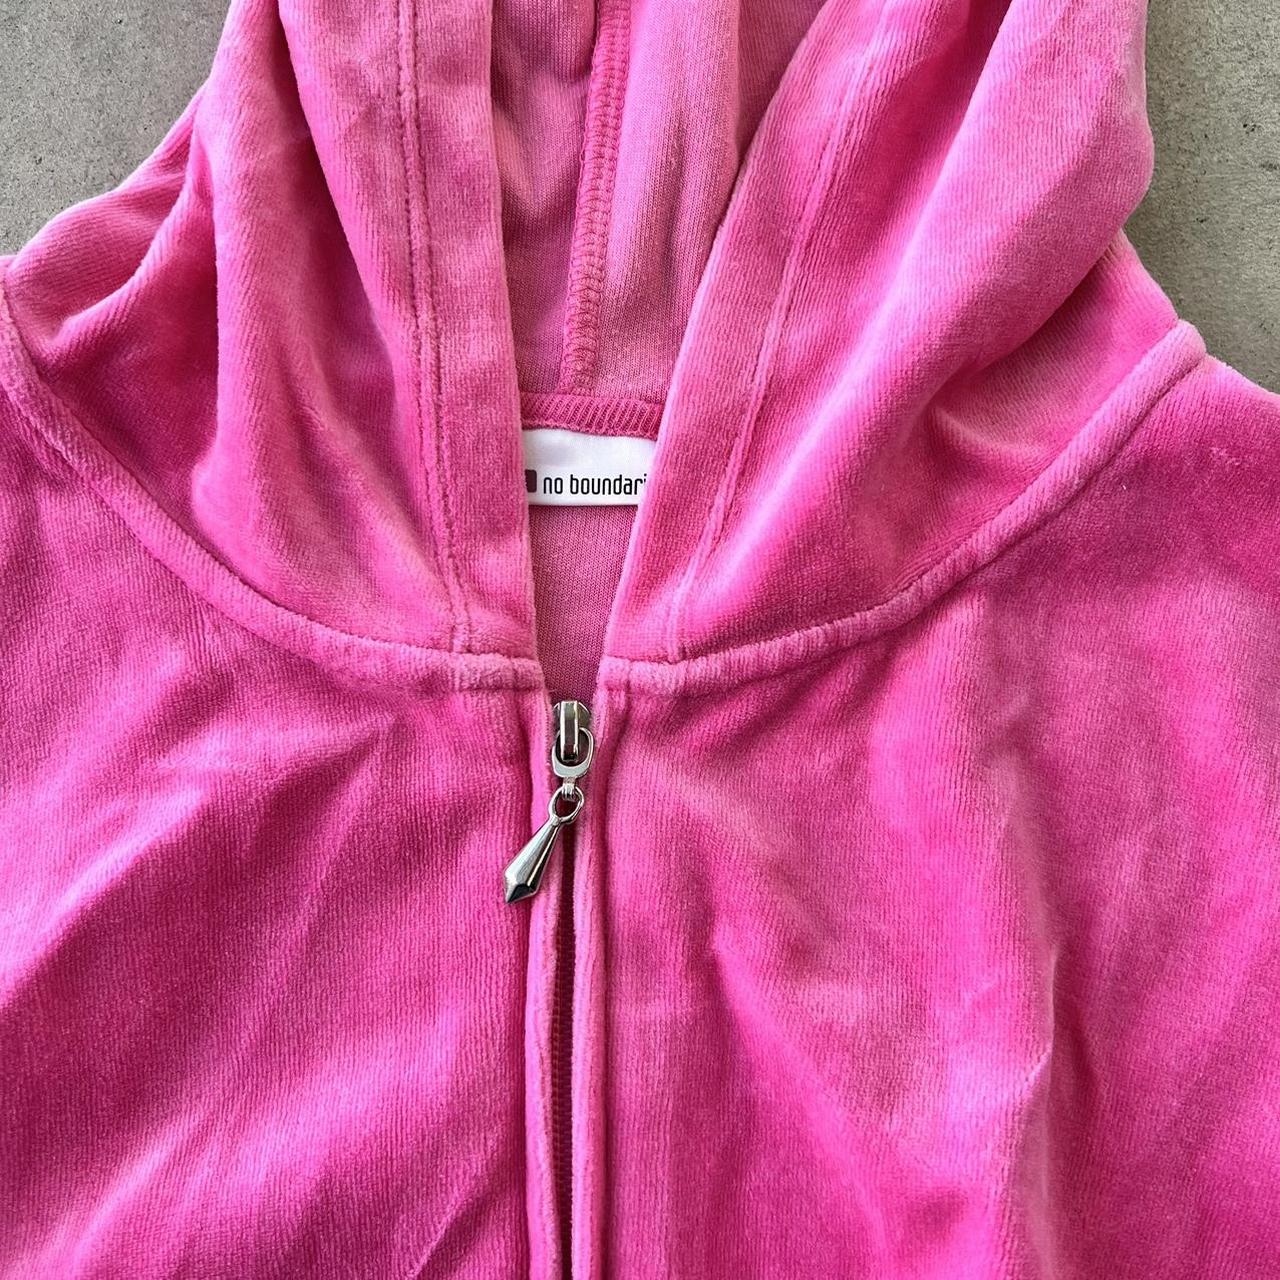 y2k 2000s pink velour jumpsuit set 🎀🎀💋 size m ... - Depop